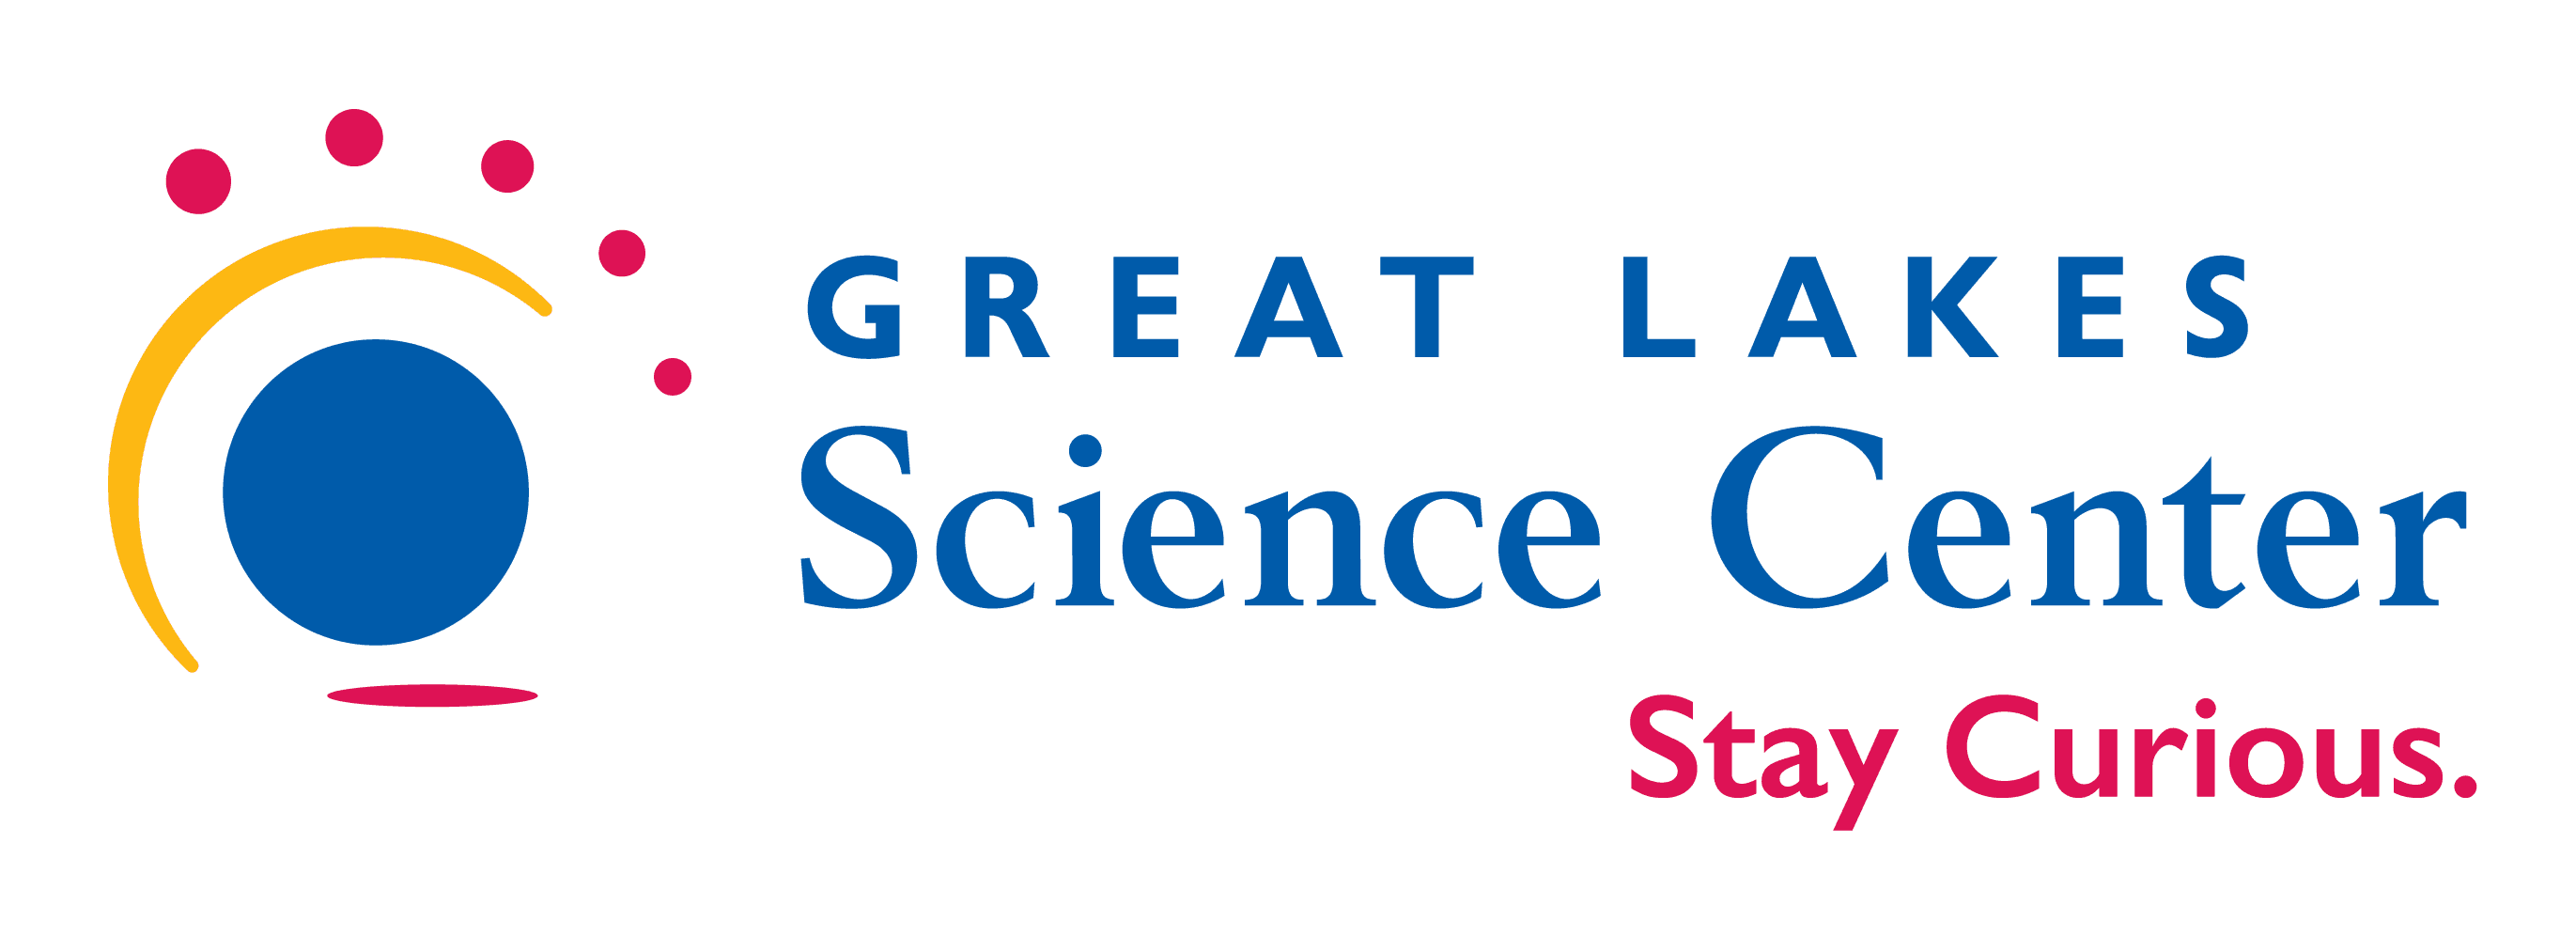 Great Lake Science Center Logo